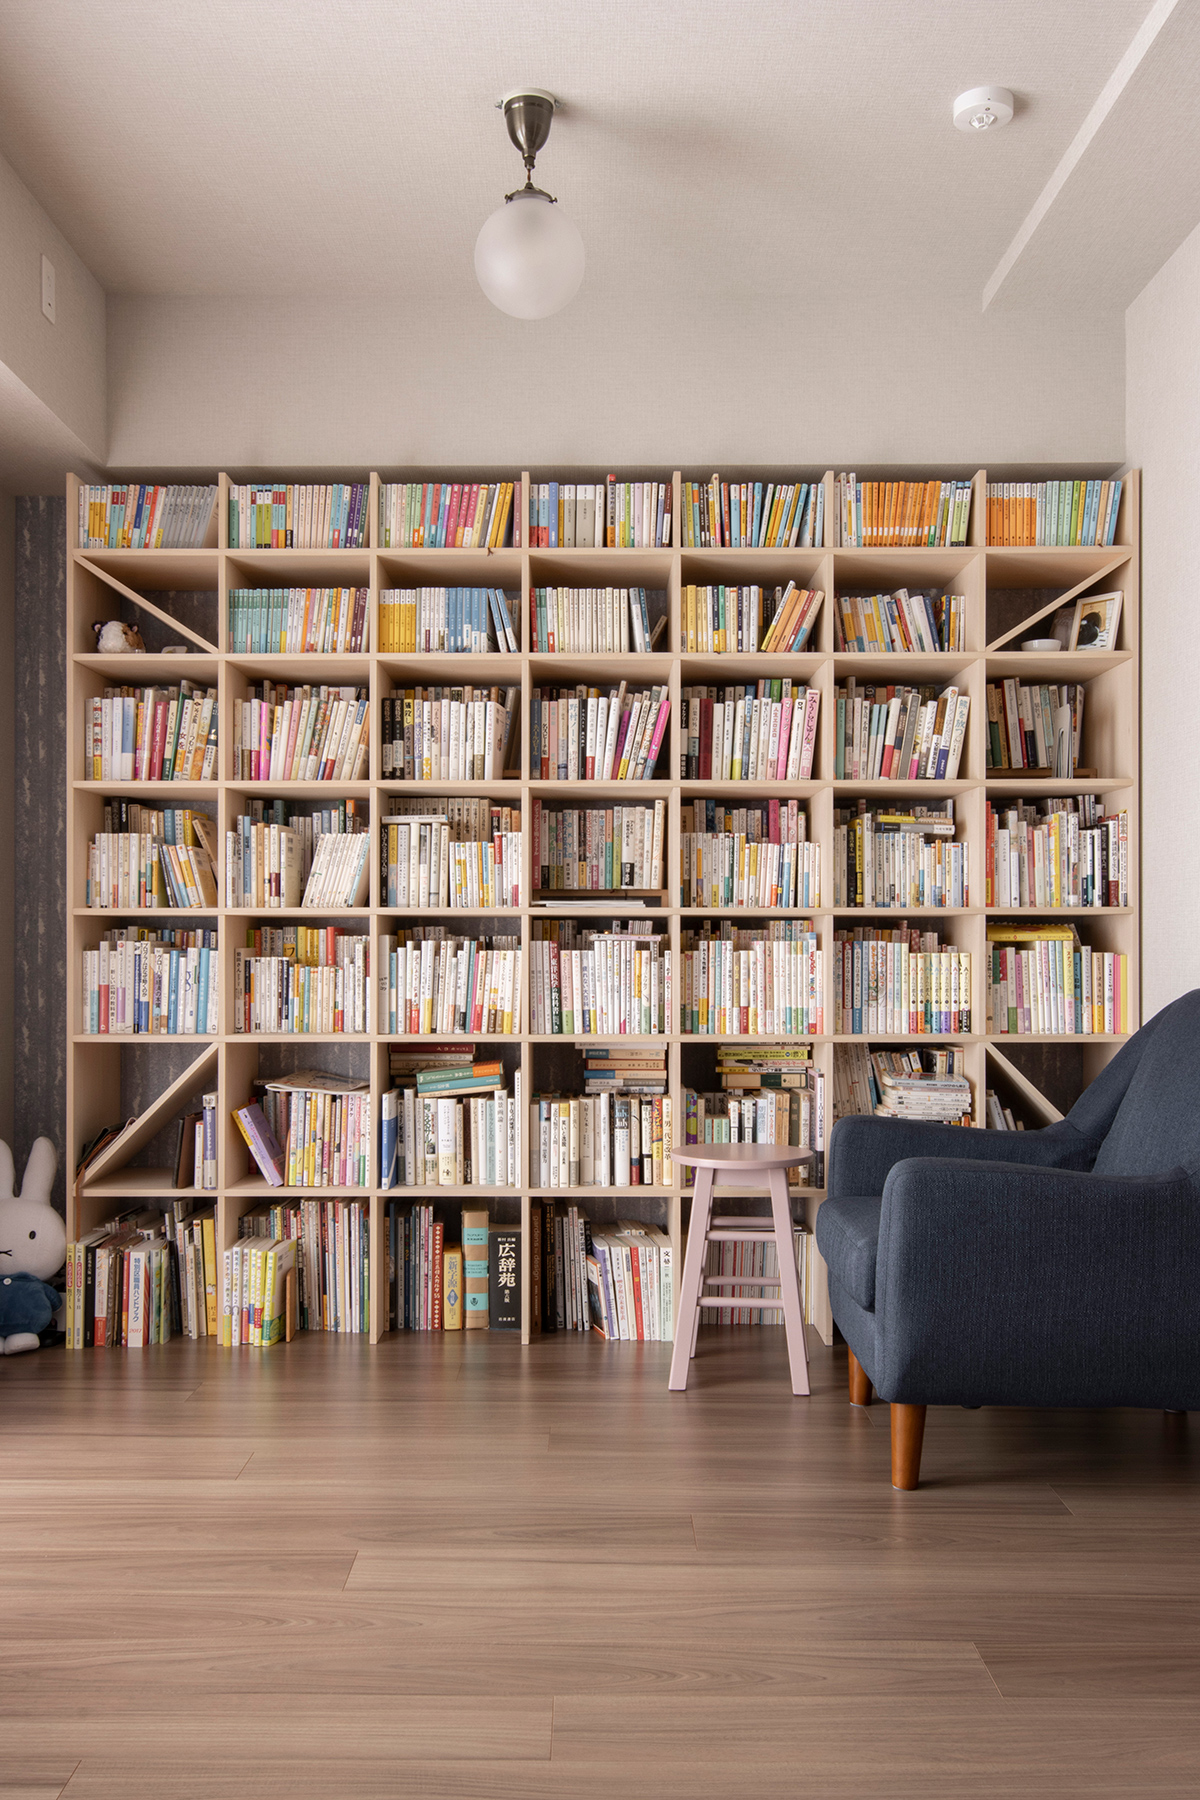 可動間仕切りで仕切れる読書空間
壁一面の本棚